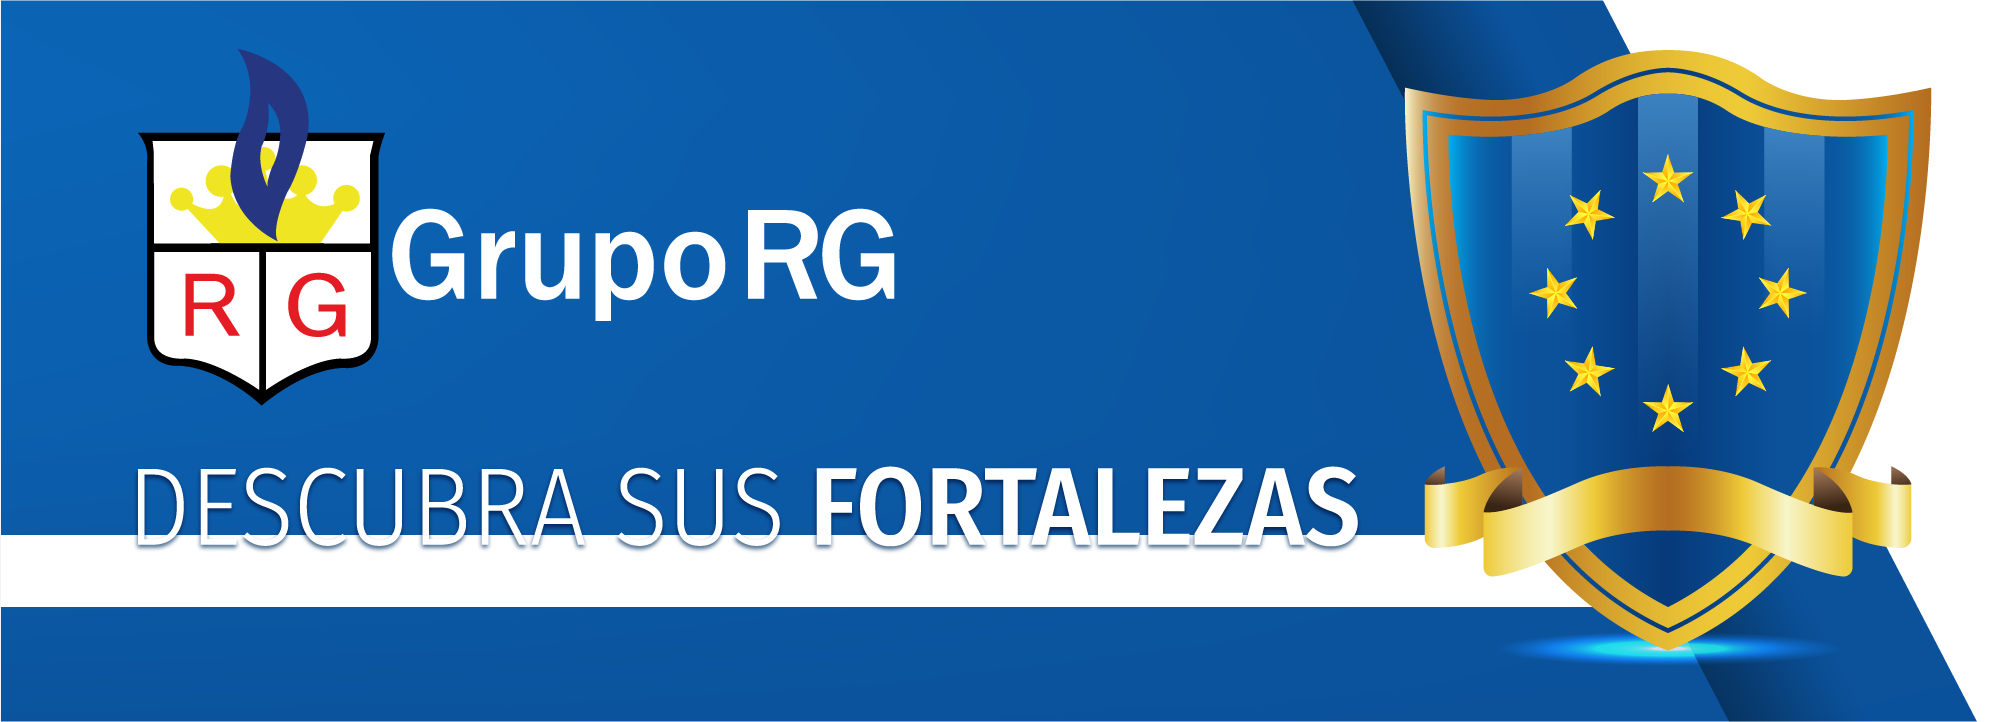 Descubra sus fortalezas - Gerentes GrupoRG - Gpo1 RG-0011